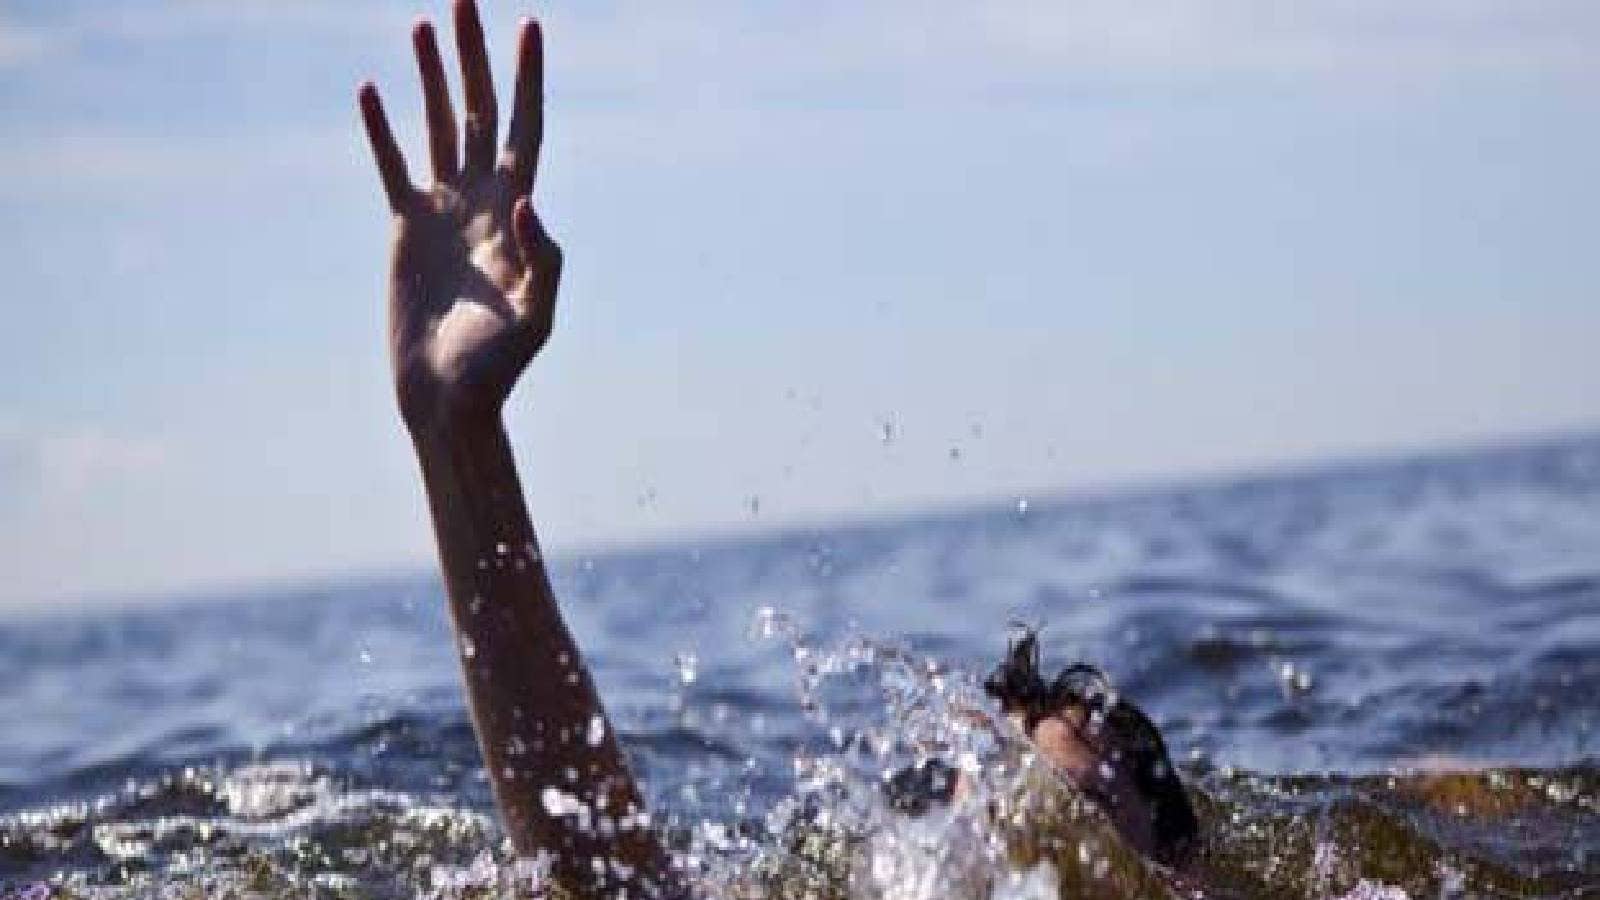 Купался в море я черном. Человек тонет на берегу реки. Фото тонущего человека.